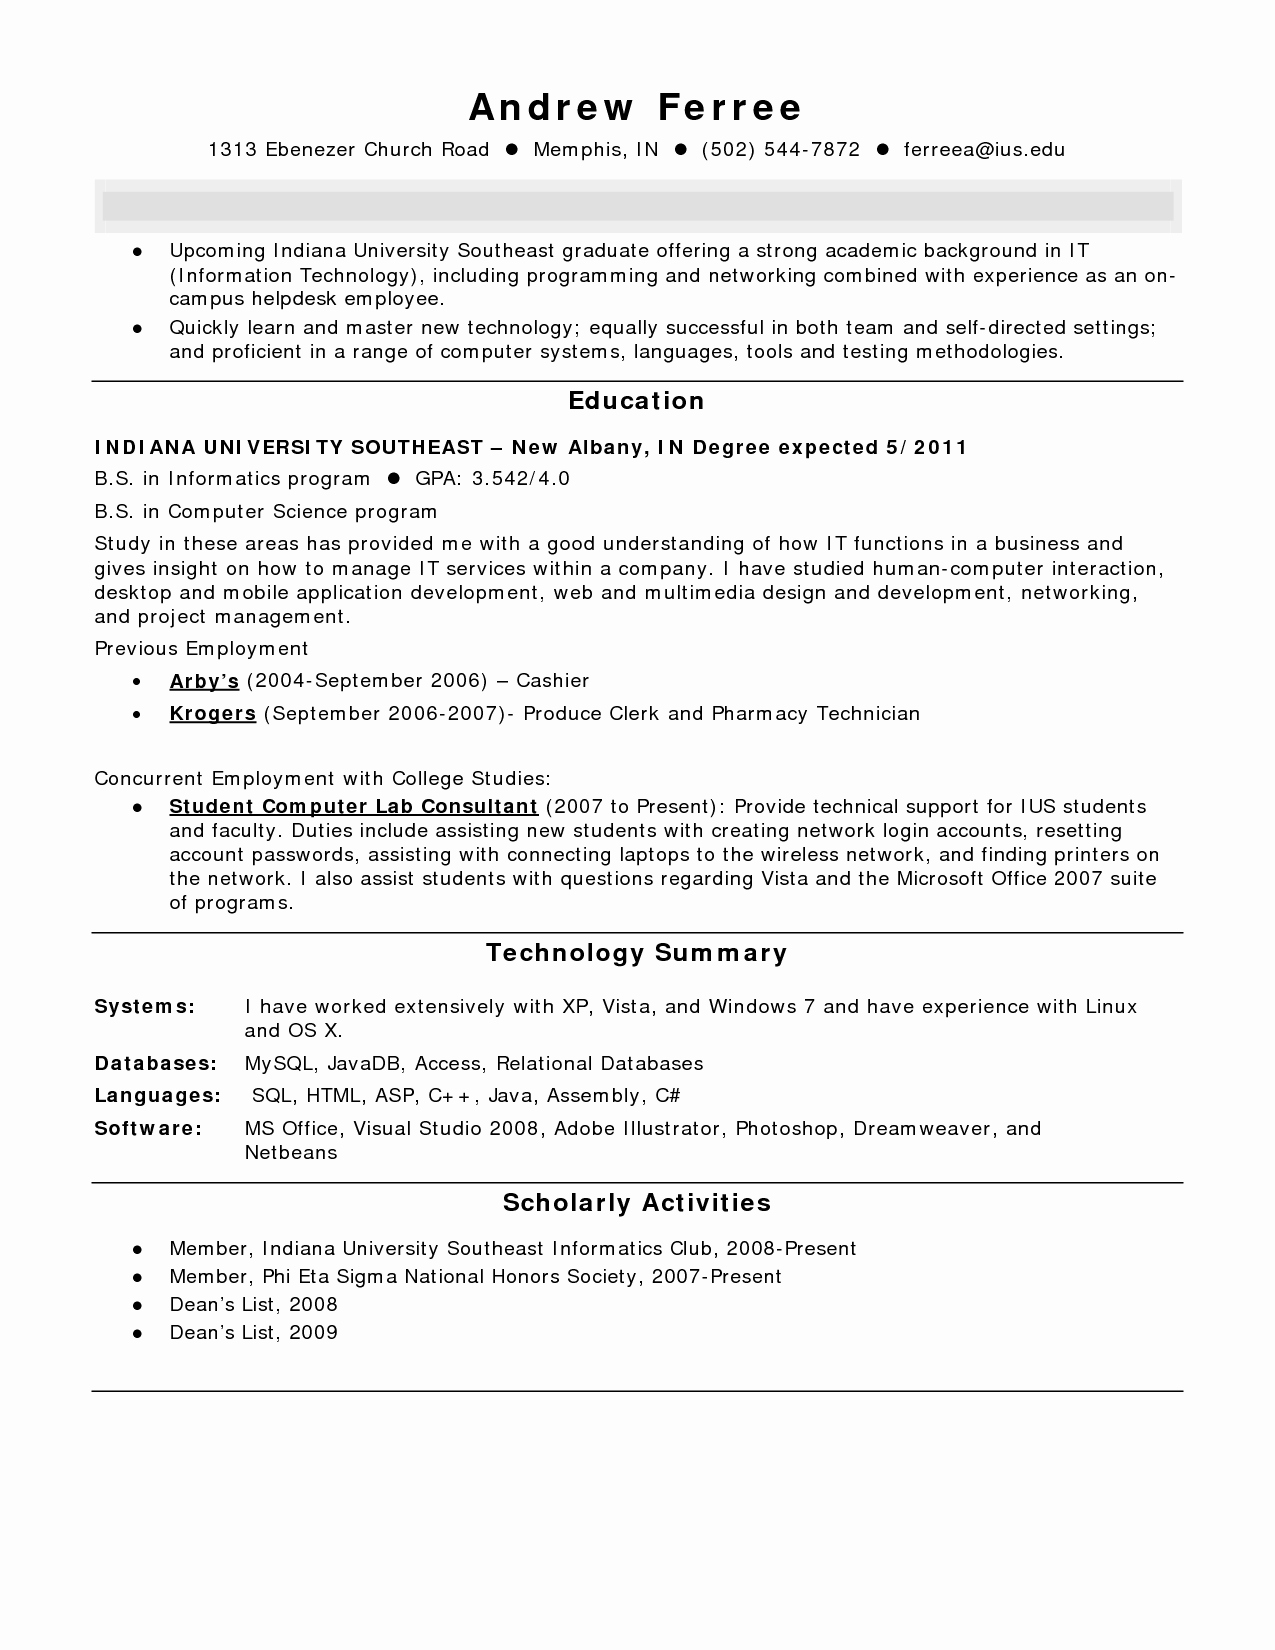 Pharmacy Technician Resume Summary Resume Ideas